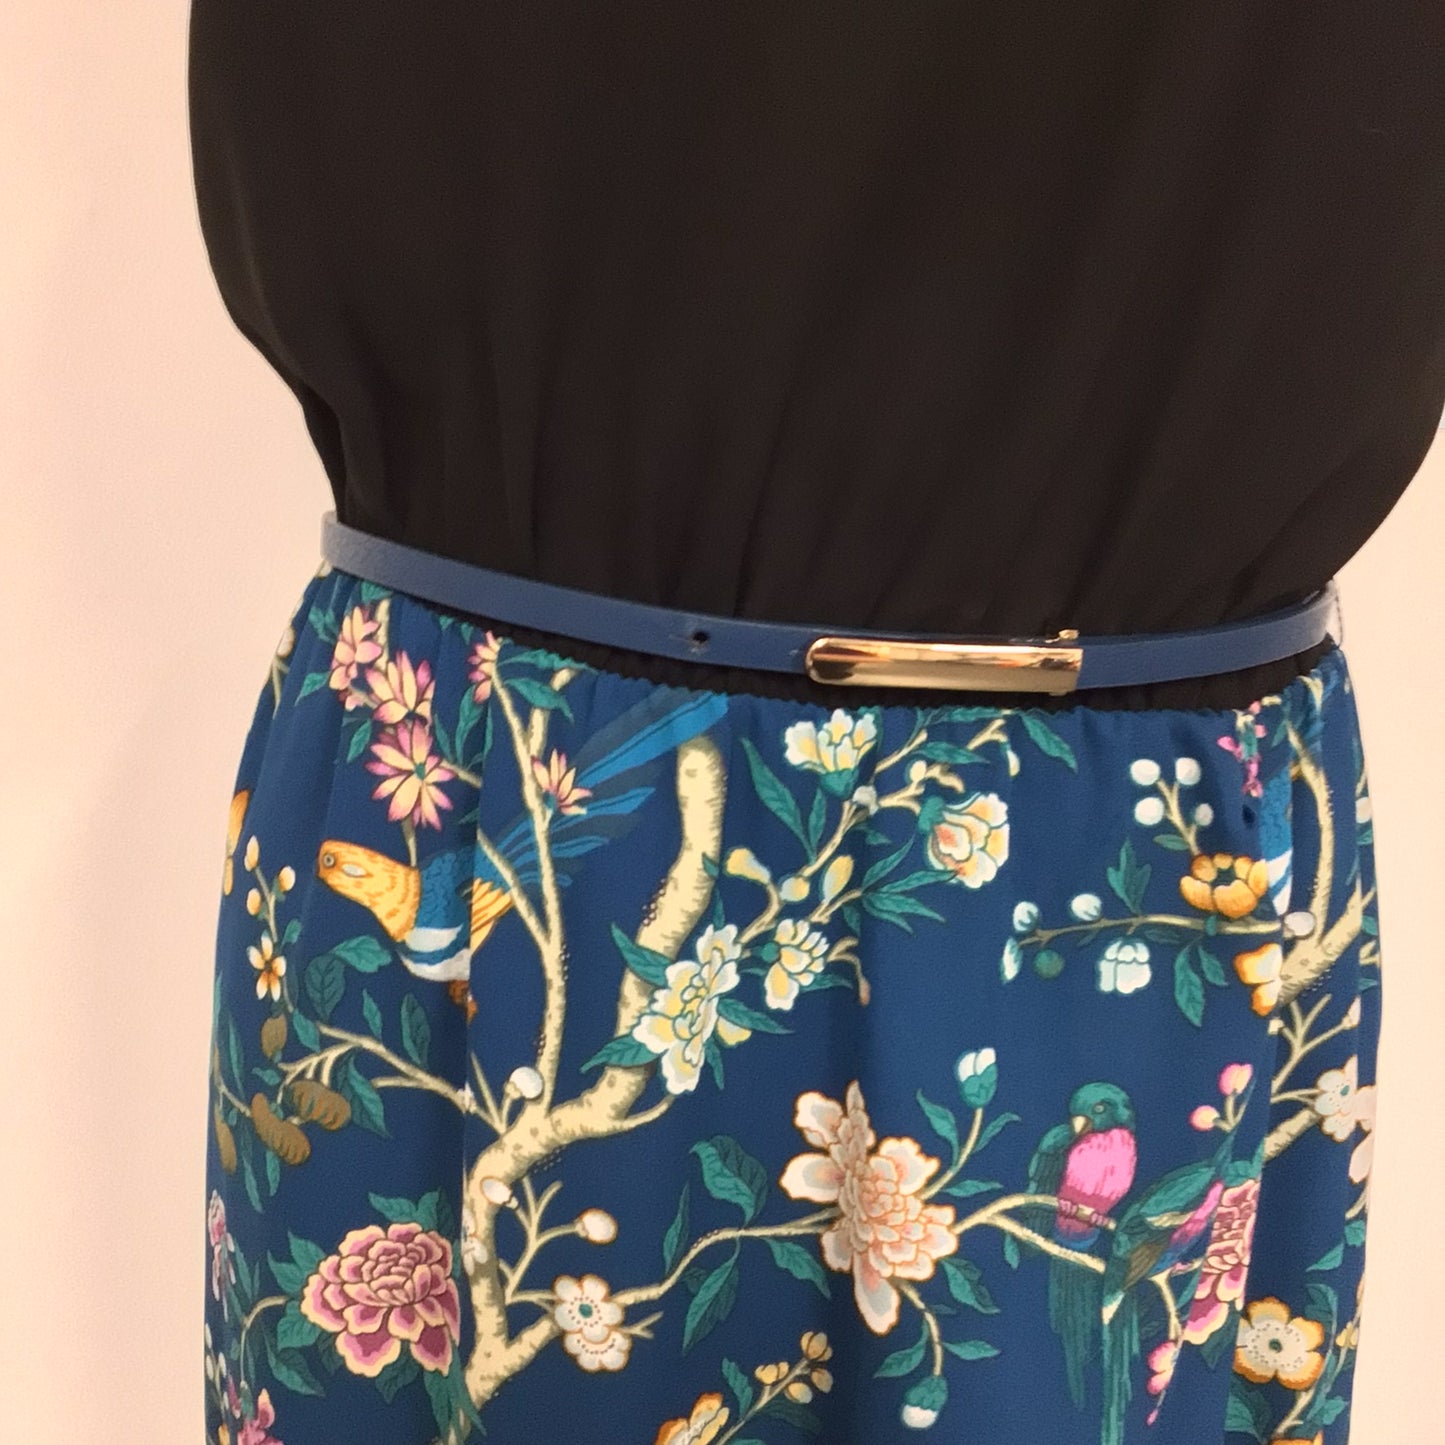 Oasis V&A Black & Blue V Neck High-Low Dress w/Bird Floral Print Skirt & Belt Size 10